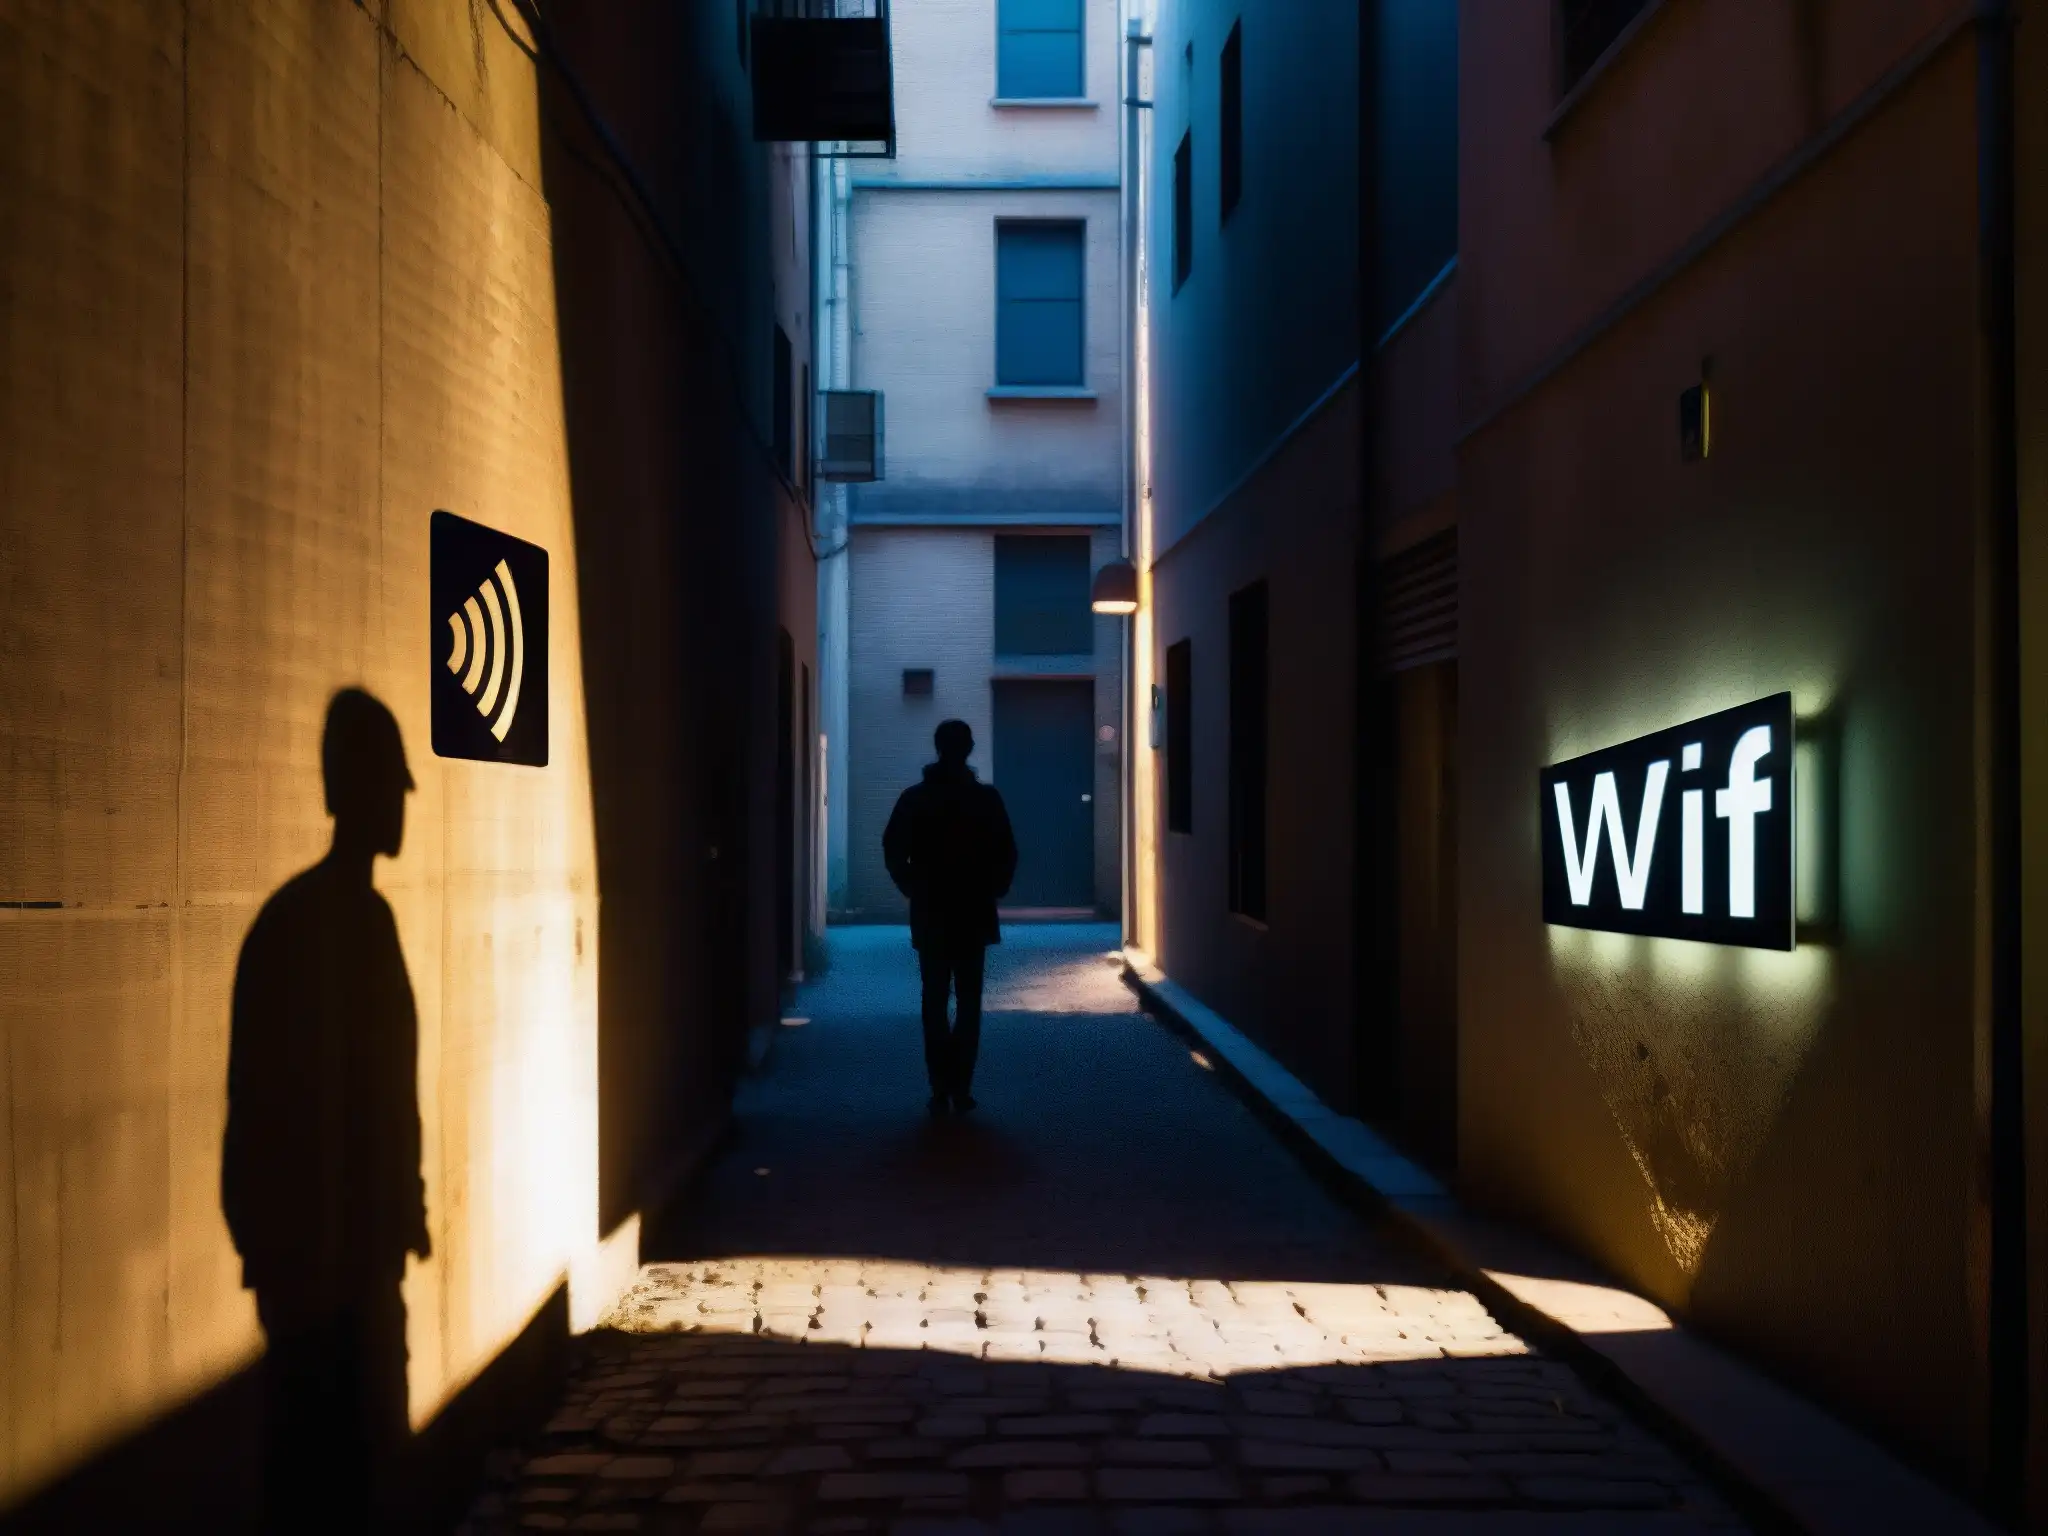 Silueta misteriosa en callejón urbano iluminado por WiFi Bluetooth